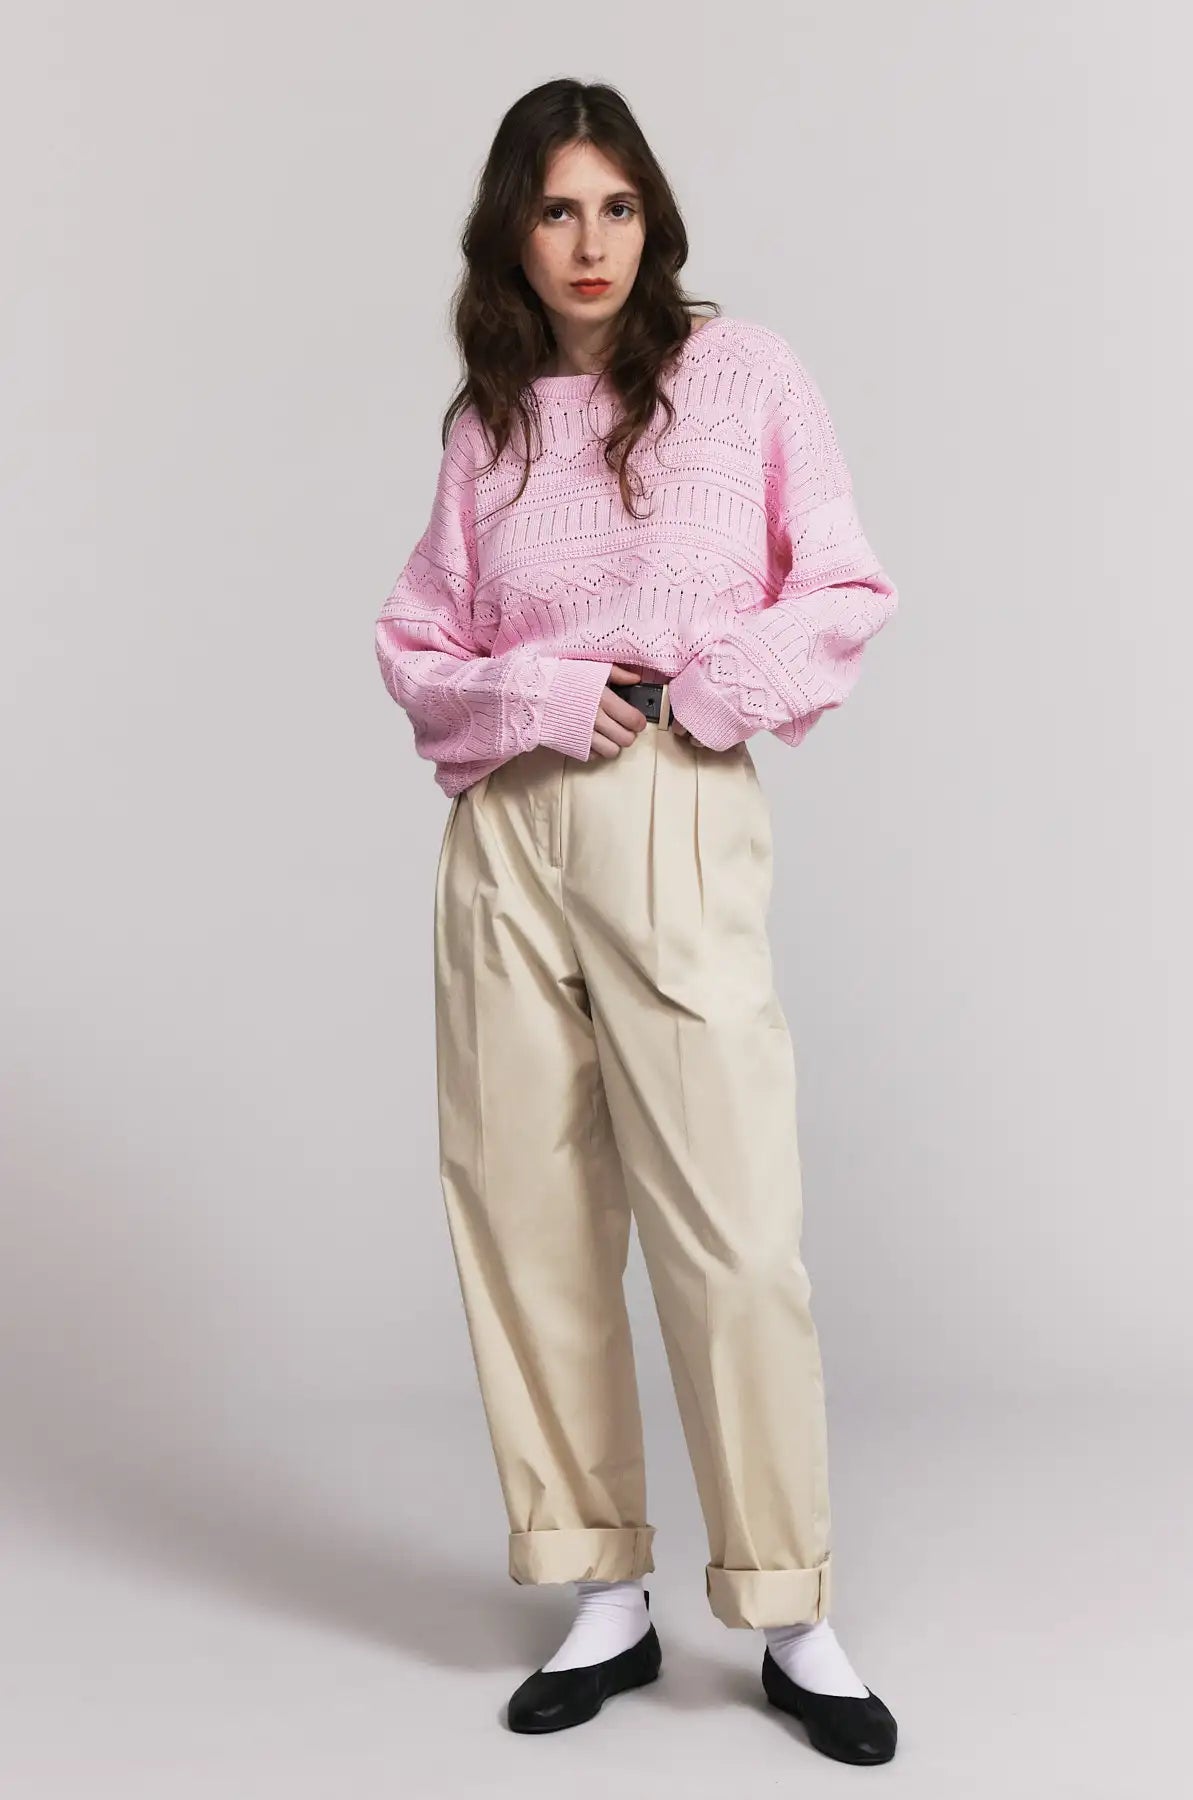 Produit maille Taline manches longues couleur rose tricoté par la marque Parisienne Tricots Jean Marc 1972.